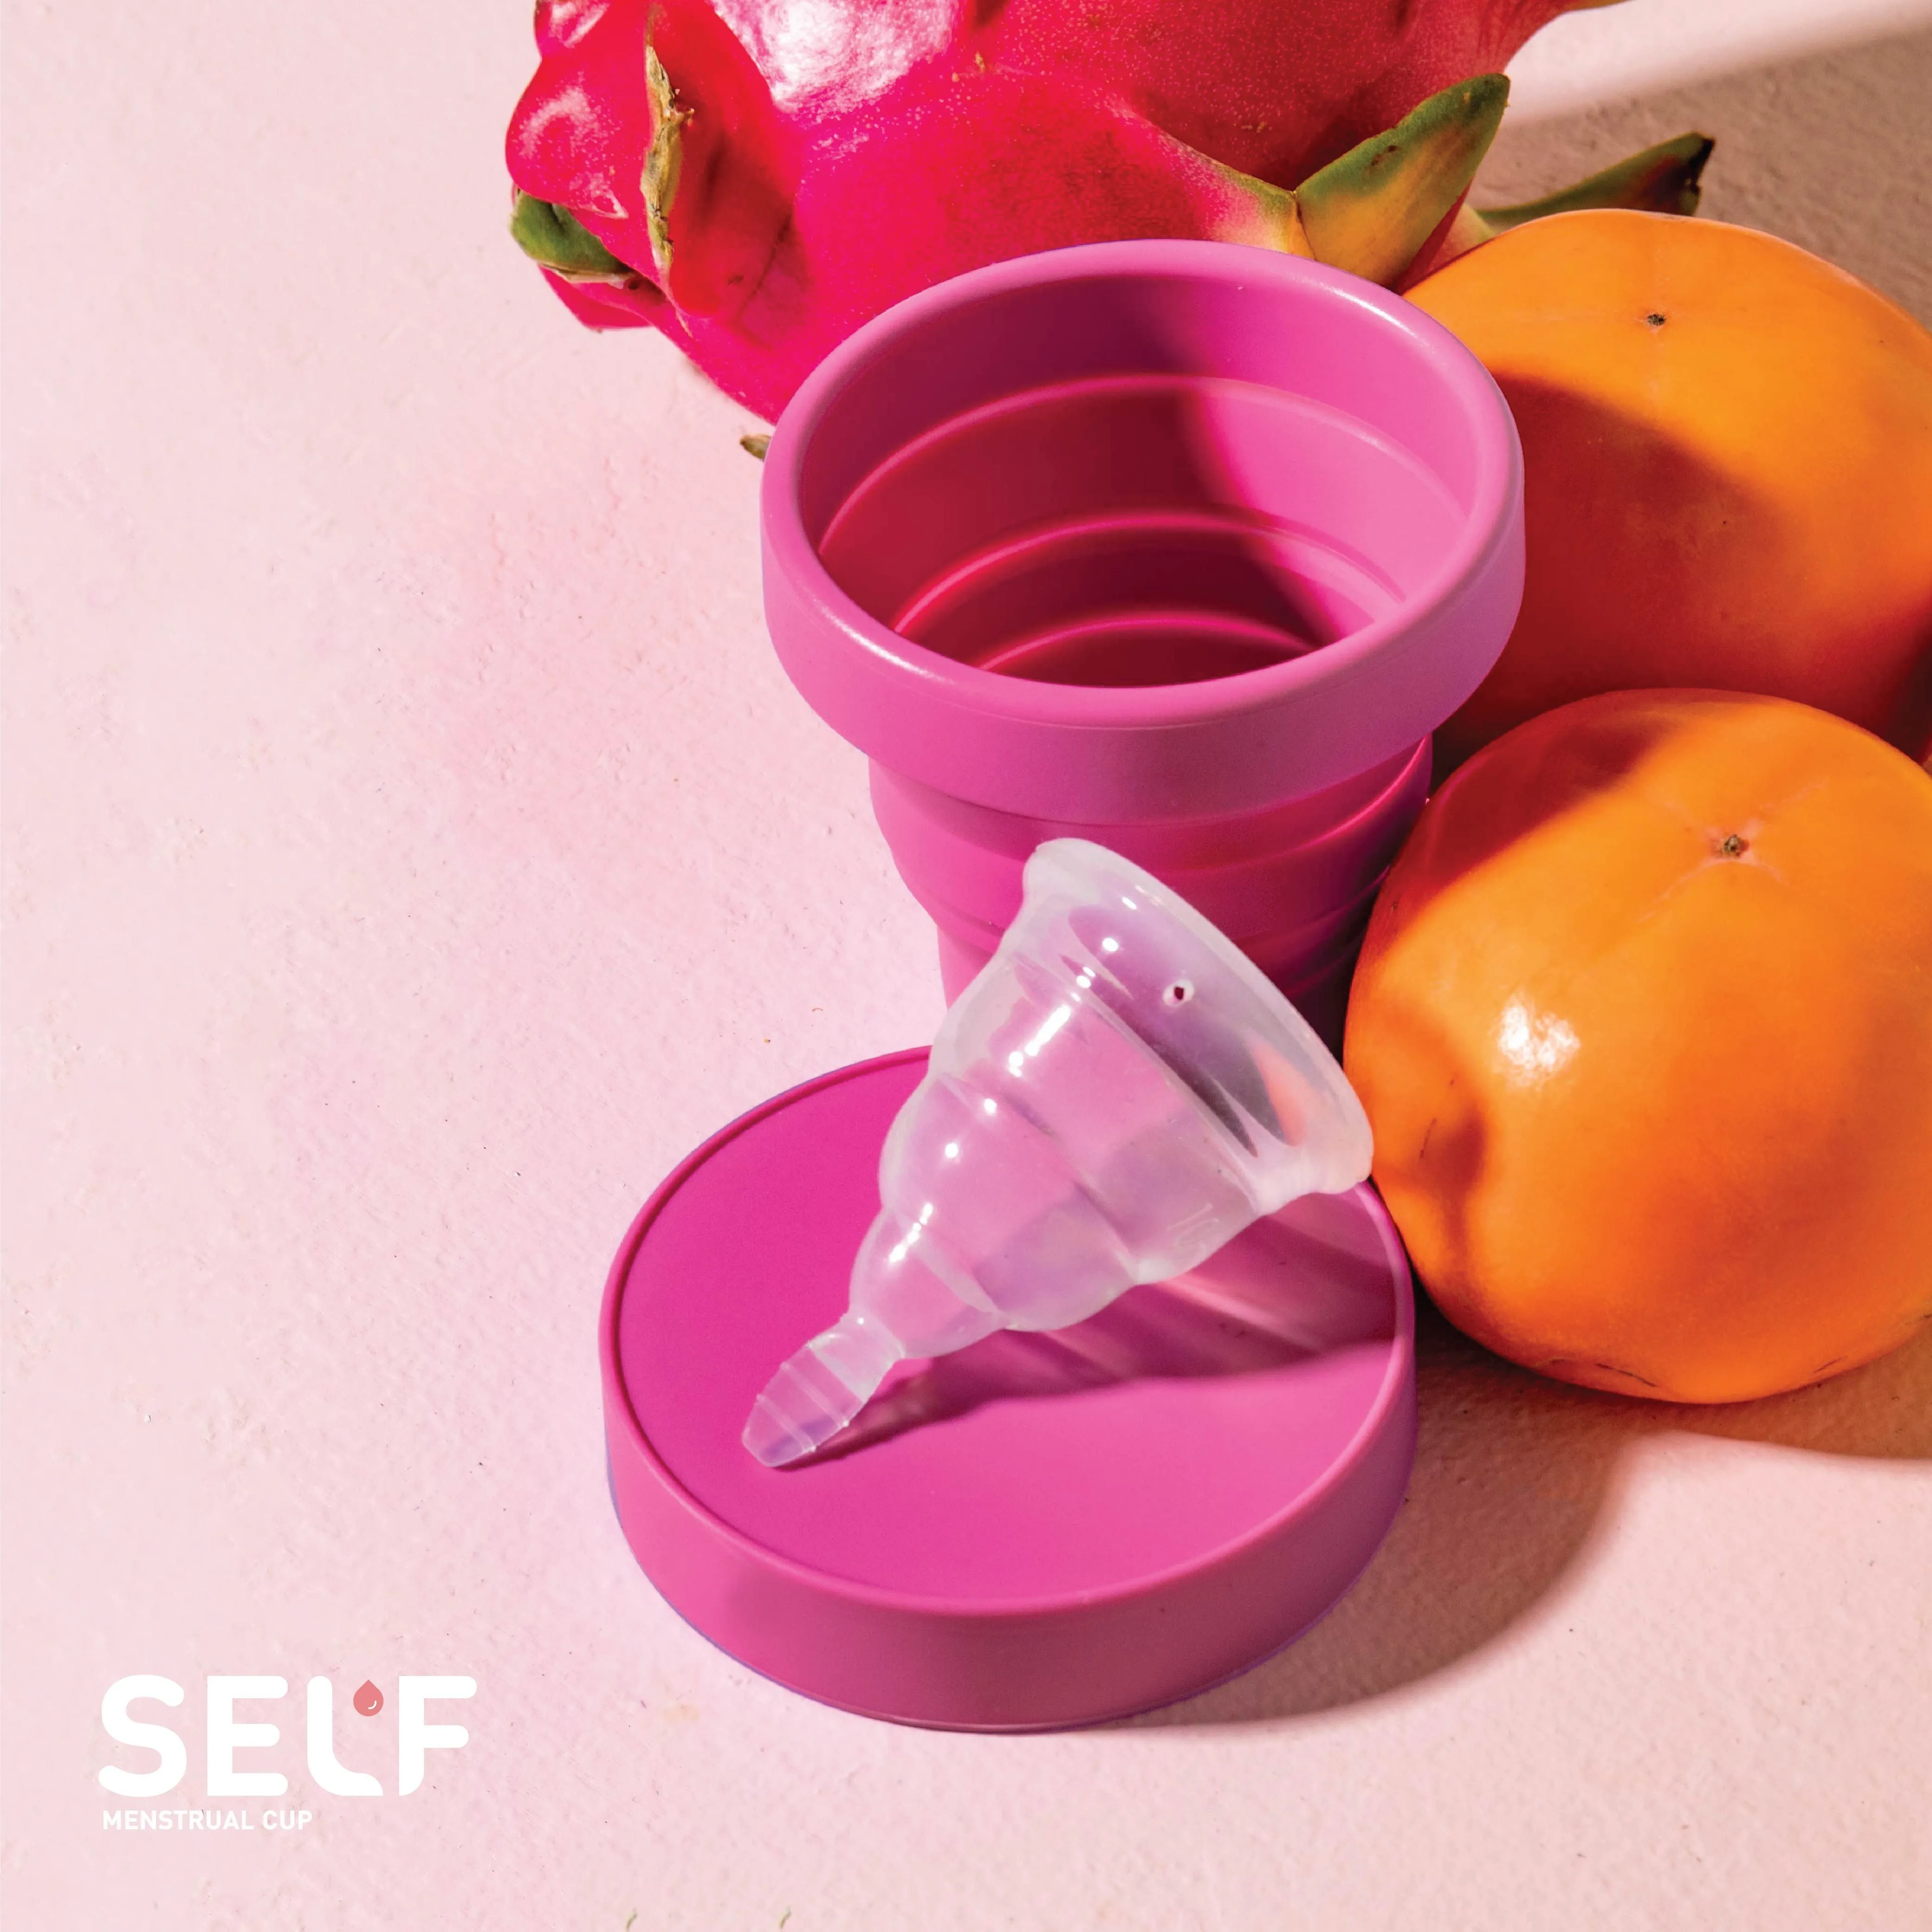 Self Cup - Menstrual Cup dari Silikon Cair dengan Case yang dapat Dilipat